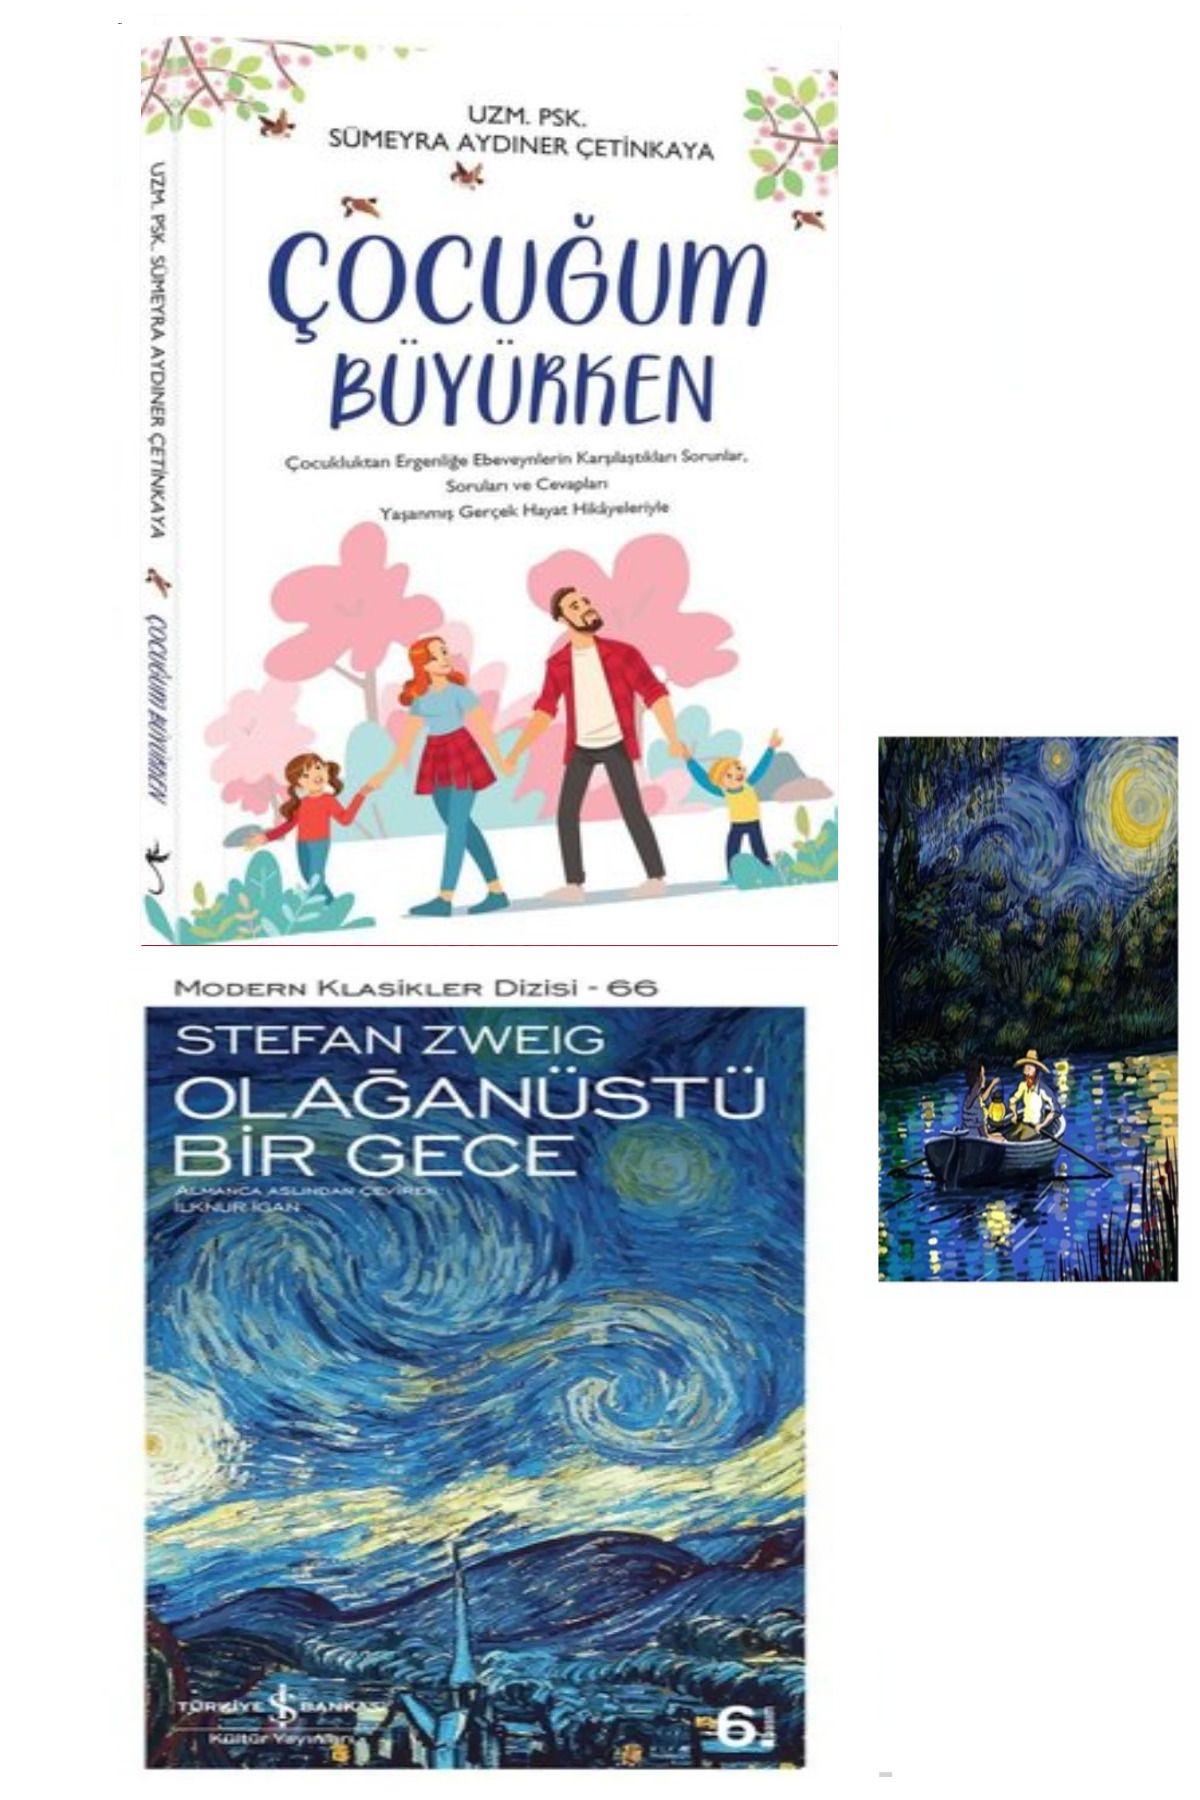 Türkiye İş Bankası Kültür Yayınları Çocuğum Büyürken - Sümeyra Aydıner Çetinkaya (Koleksiyon Kitap) – Olağanüstü Bir Gece + Stiker